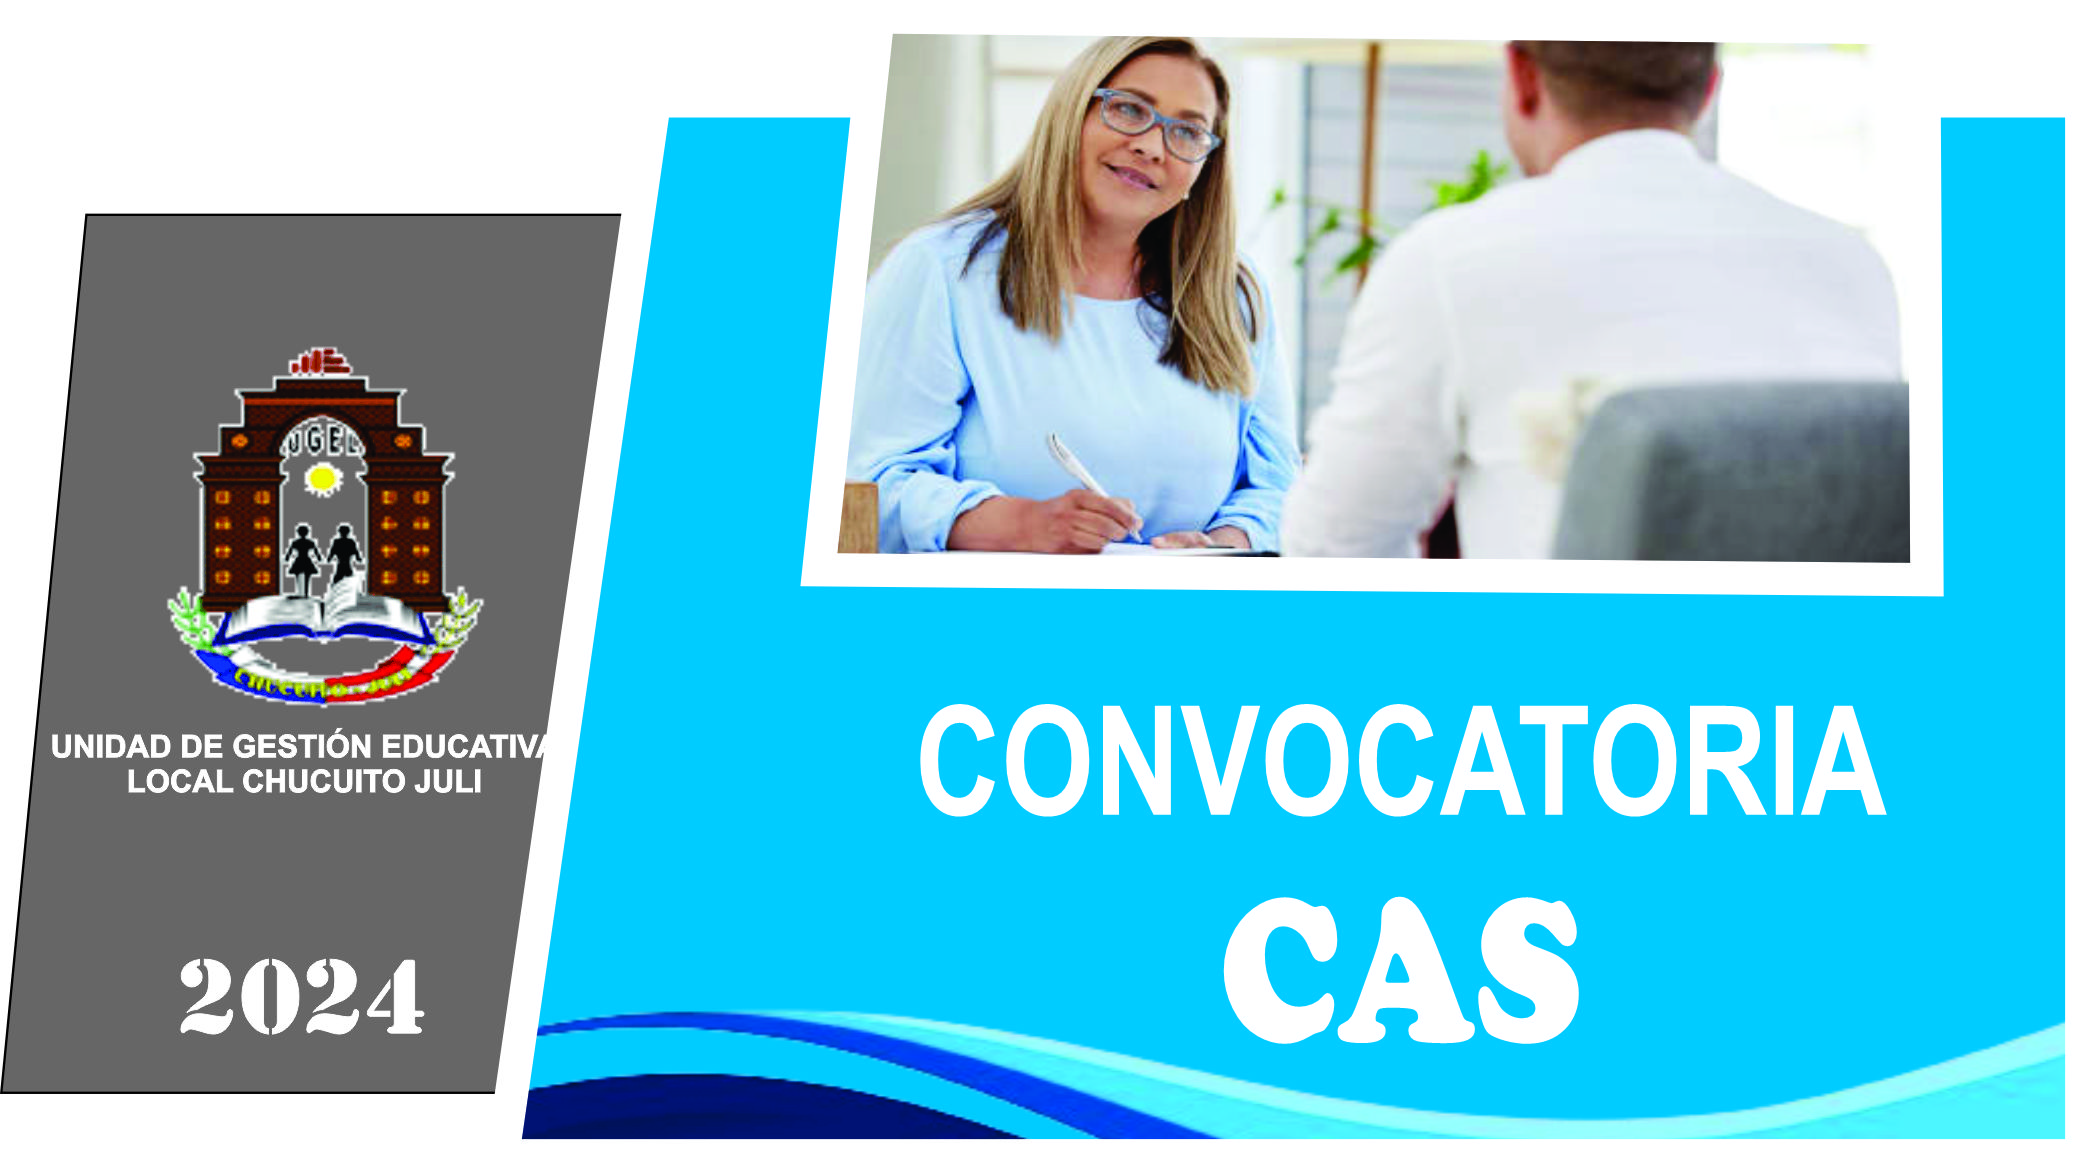 CONVOCATORIA PARA COORDINADOR (A) DE INNOVACIÓN Y SOPORTE TECNOLÓGICO – CAS Nº 027